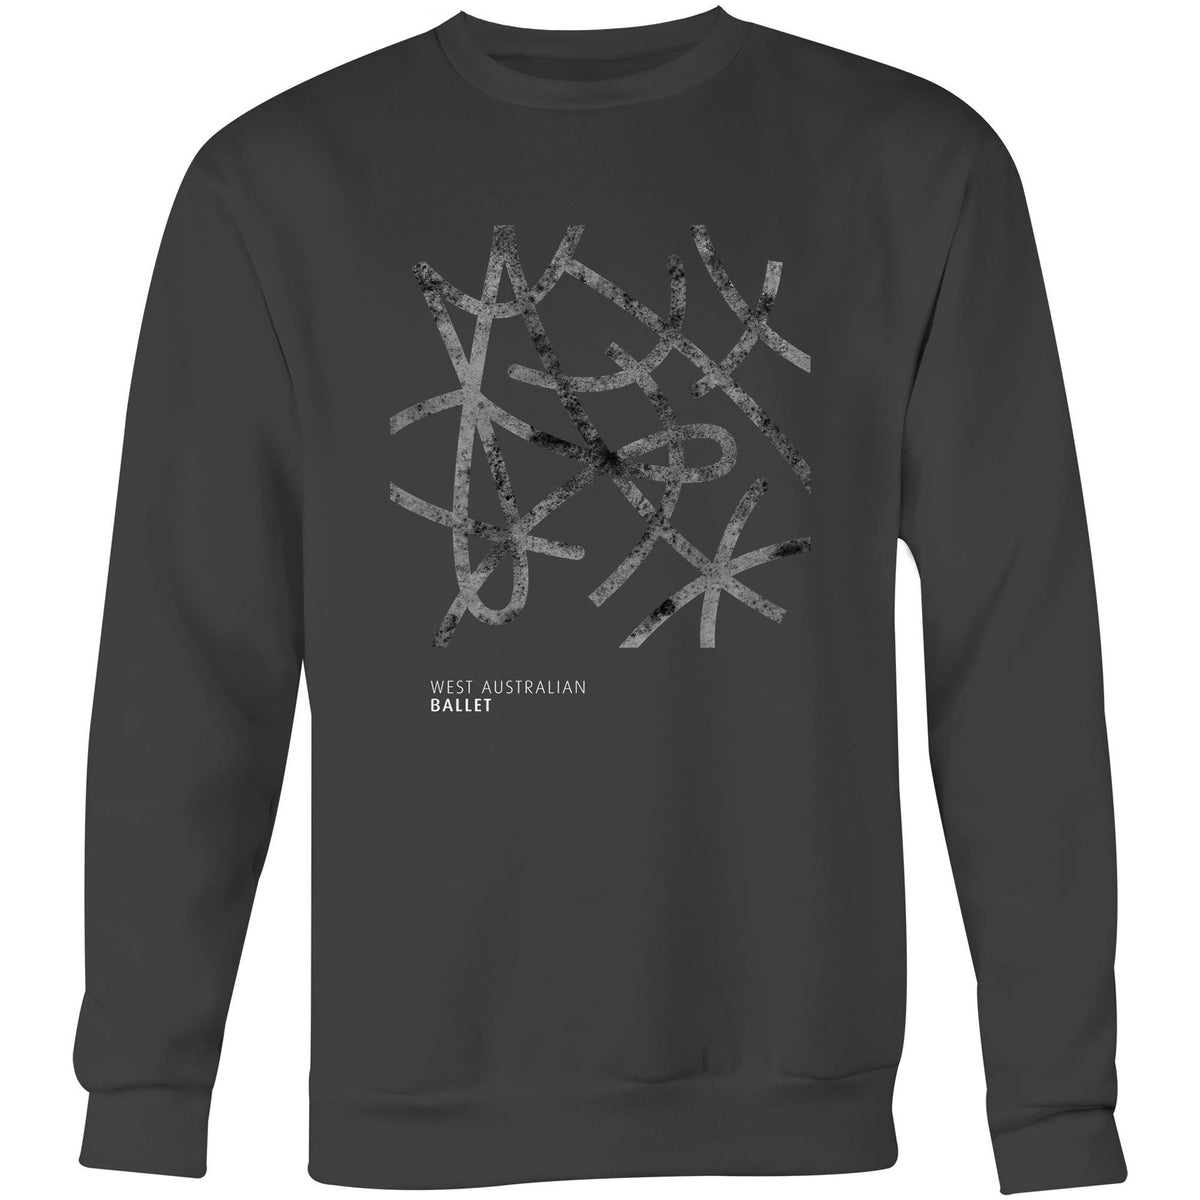 Unisex Adult Charcoal Logo Sweatshirt